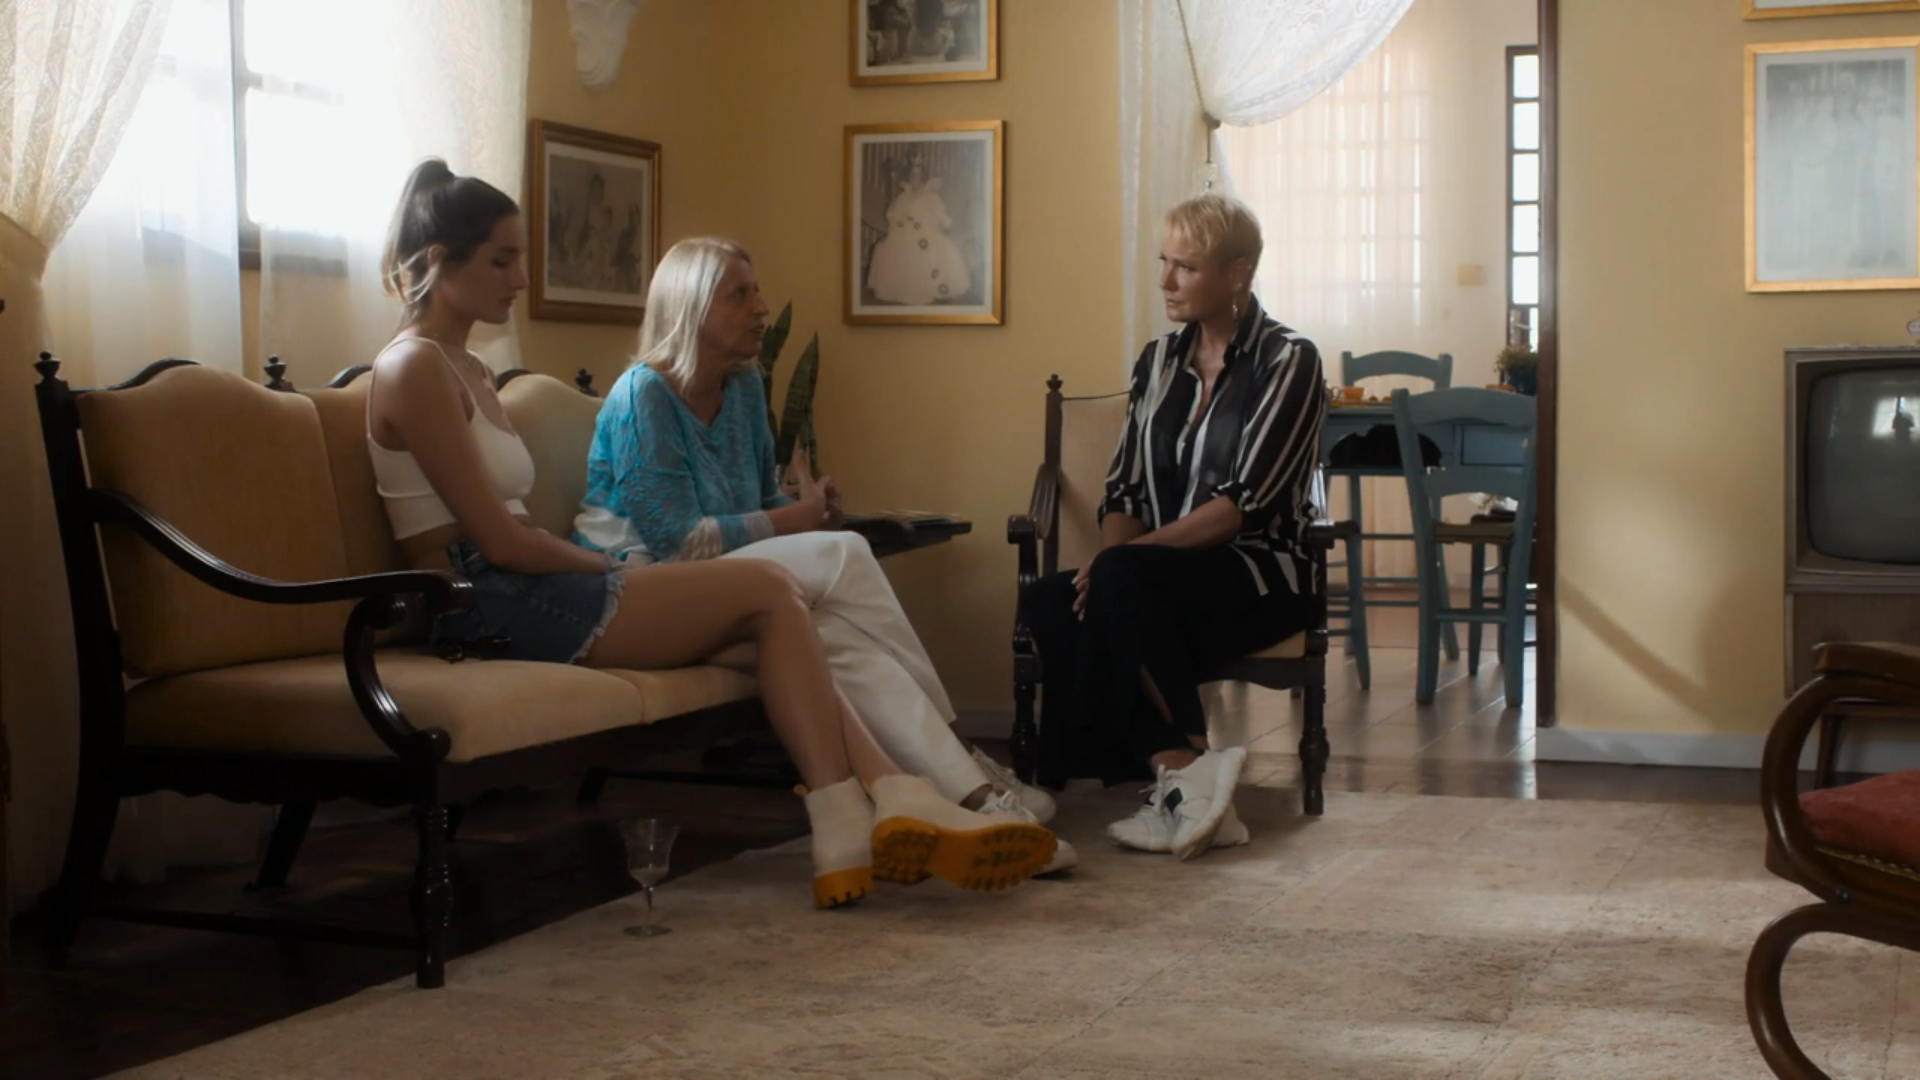 Xuxa Meneghel se emociona ao retornar a primeira casa: "Sinto a presença da mãe"